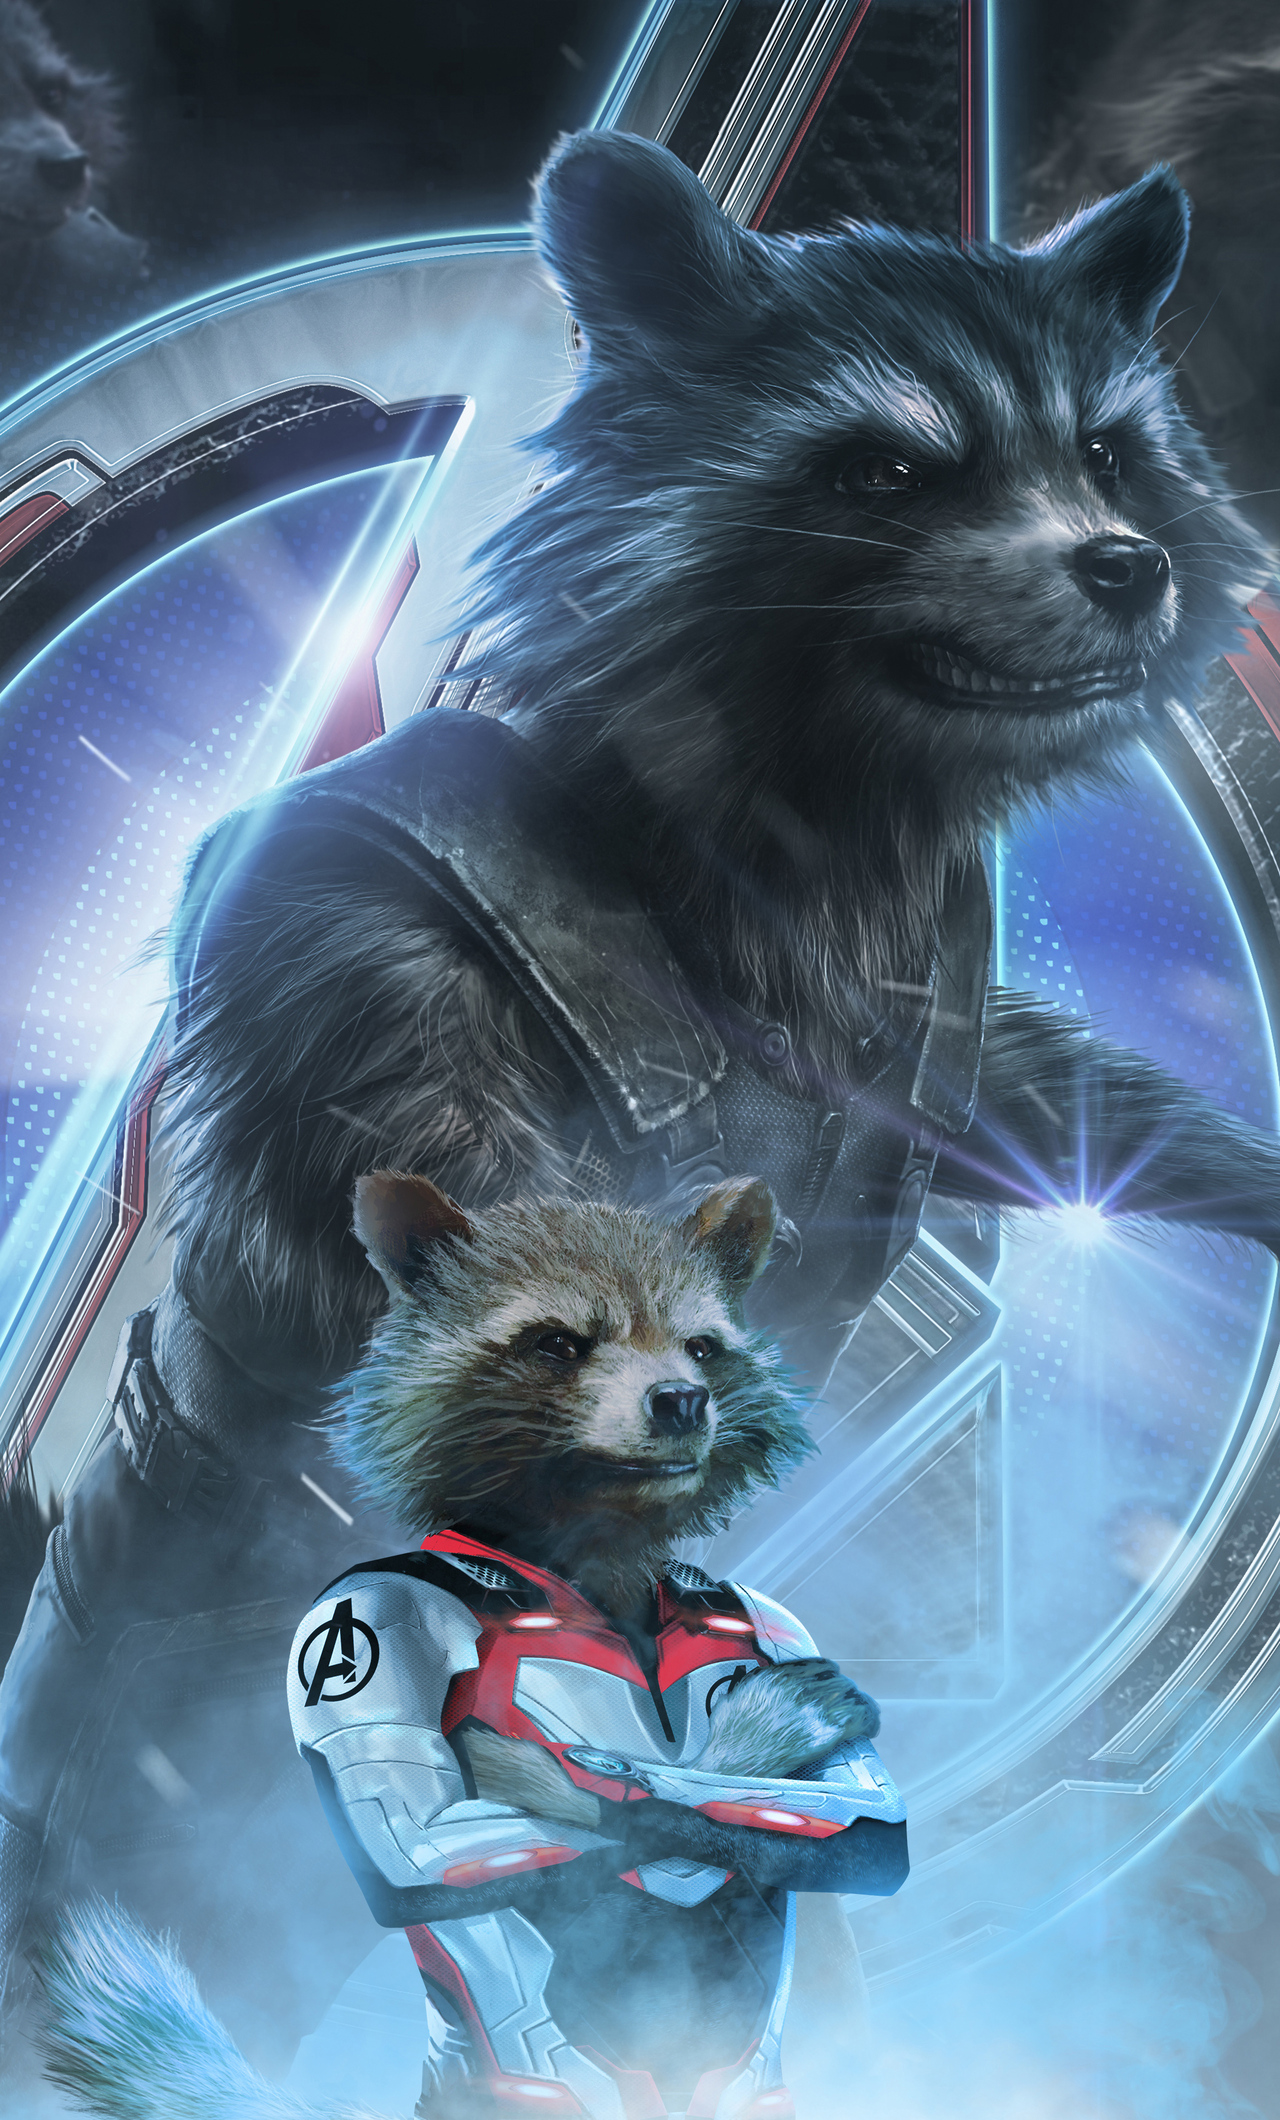 Rocket Raccoon In Avengers